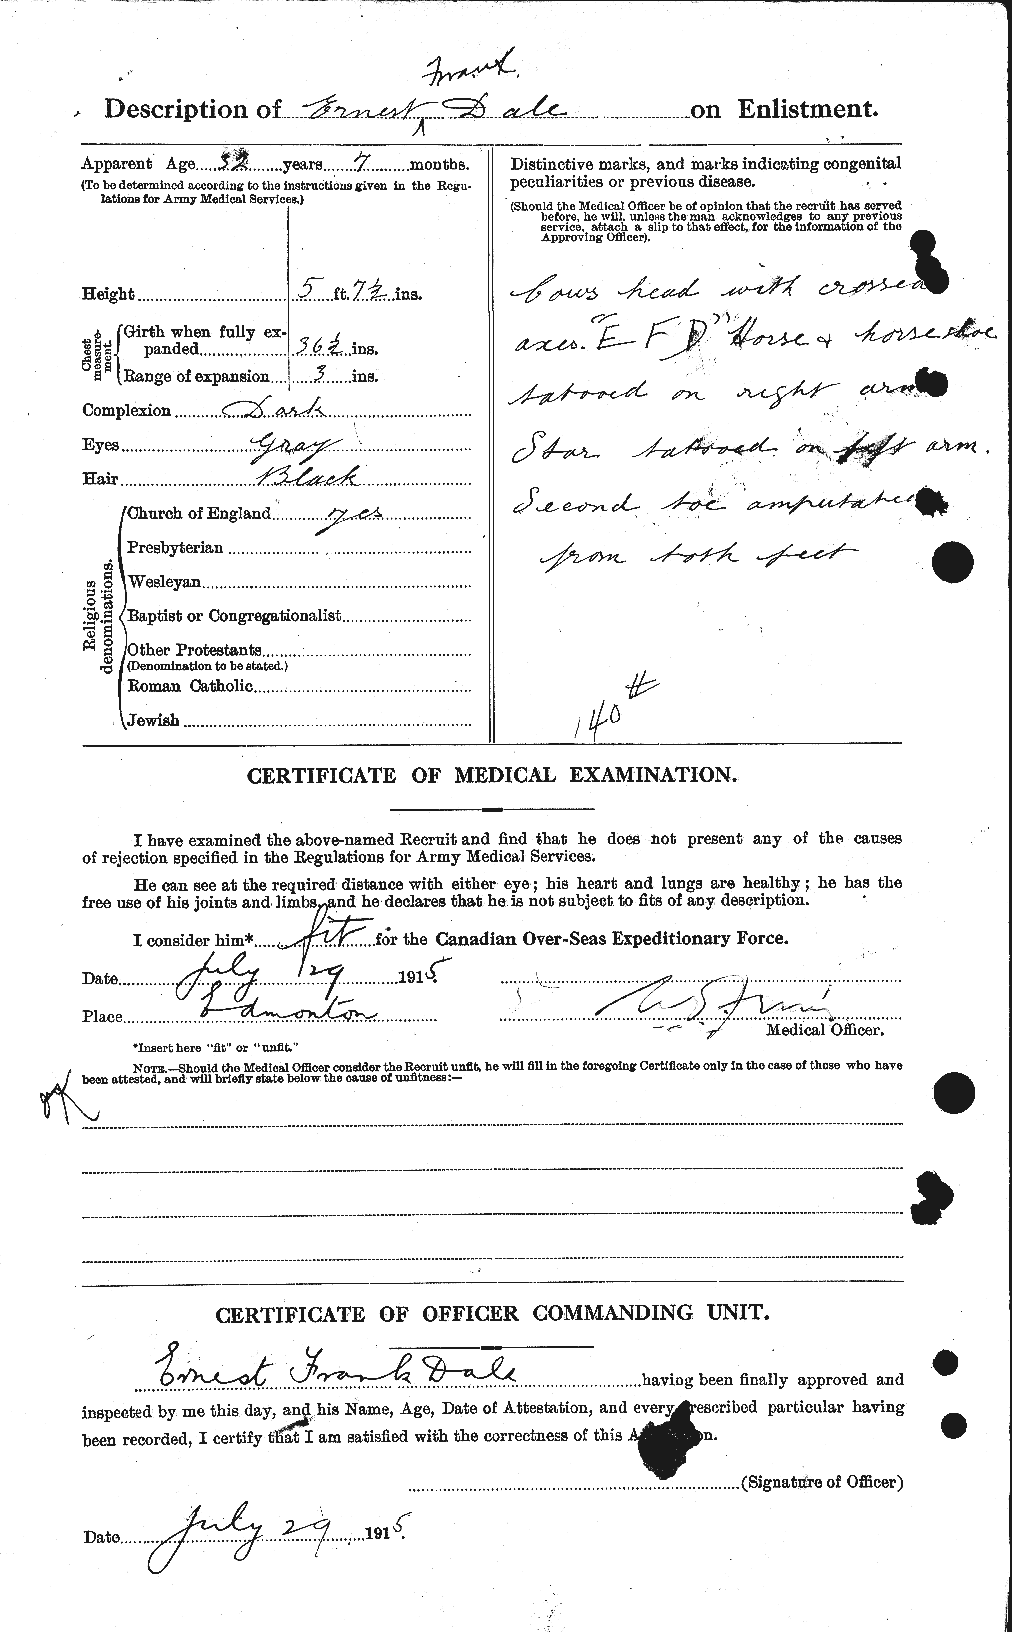 Dossiers du Personnel de la Première Guerre mondiale - CEC 279339b